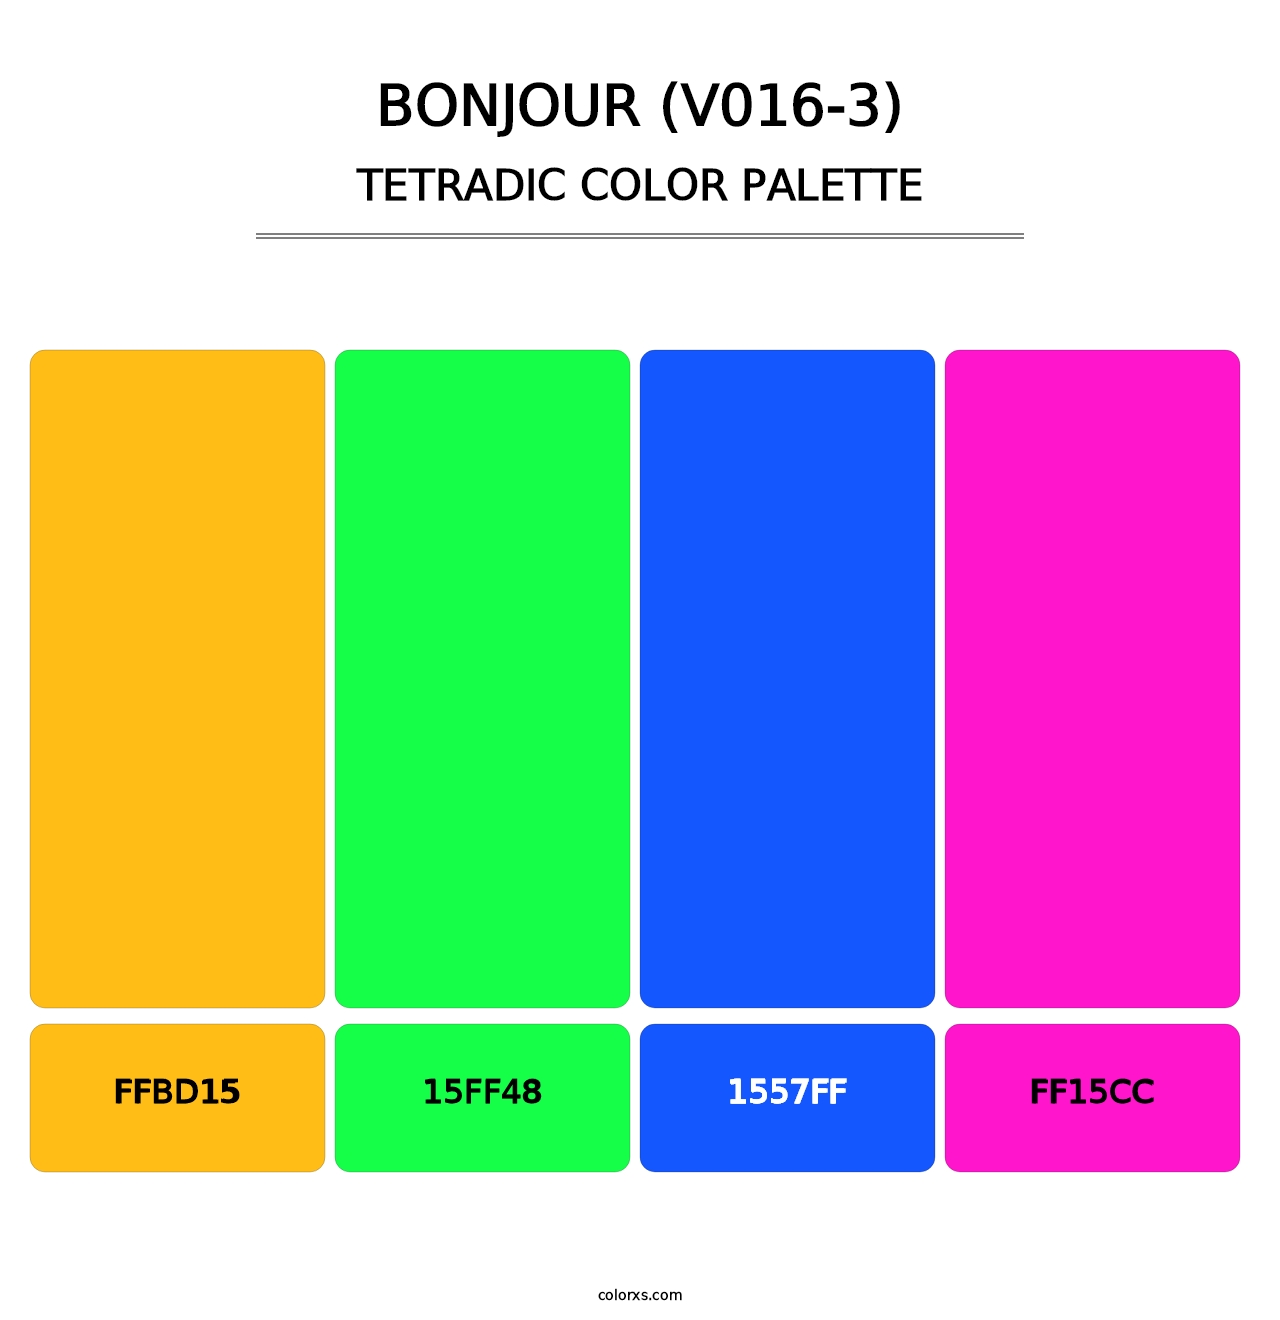 Bonjour (V016-3) - Tetradic Color Palette